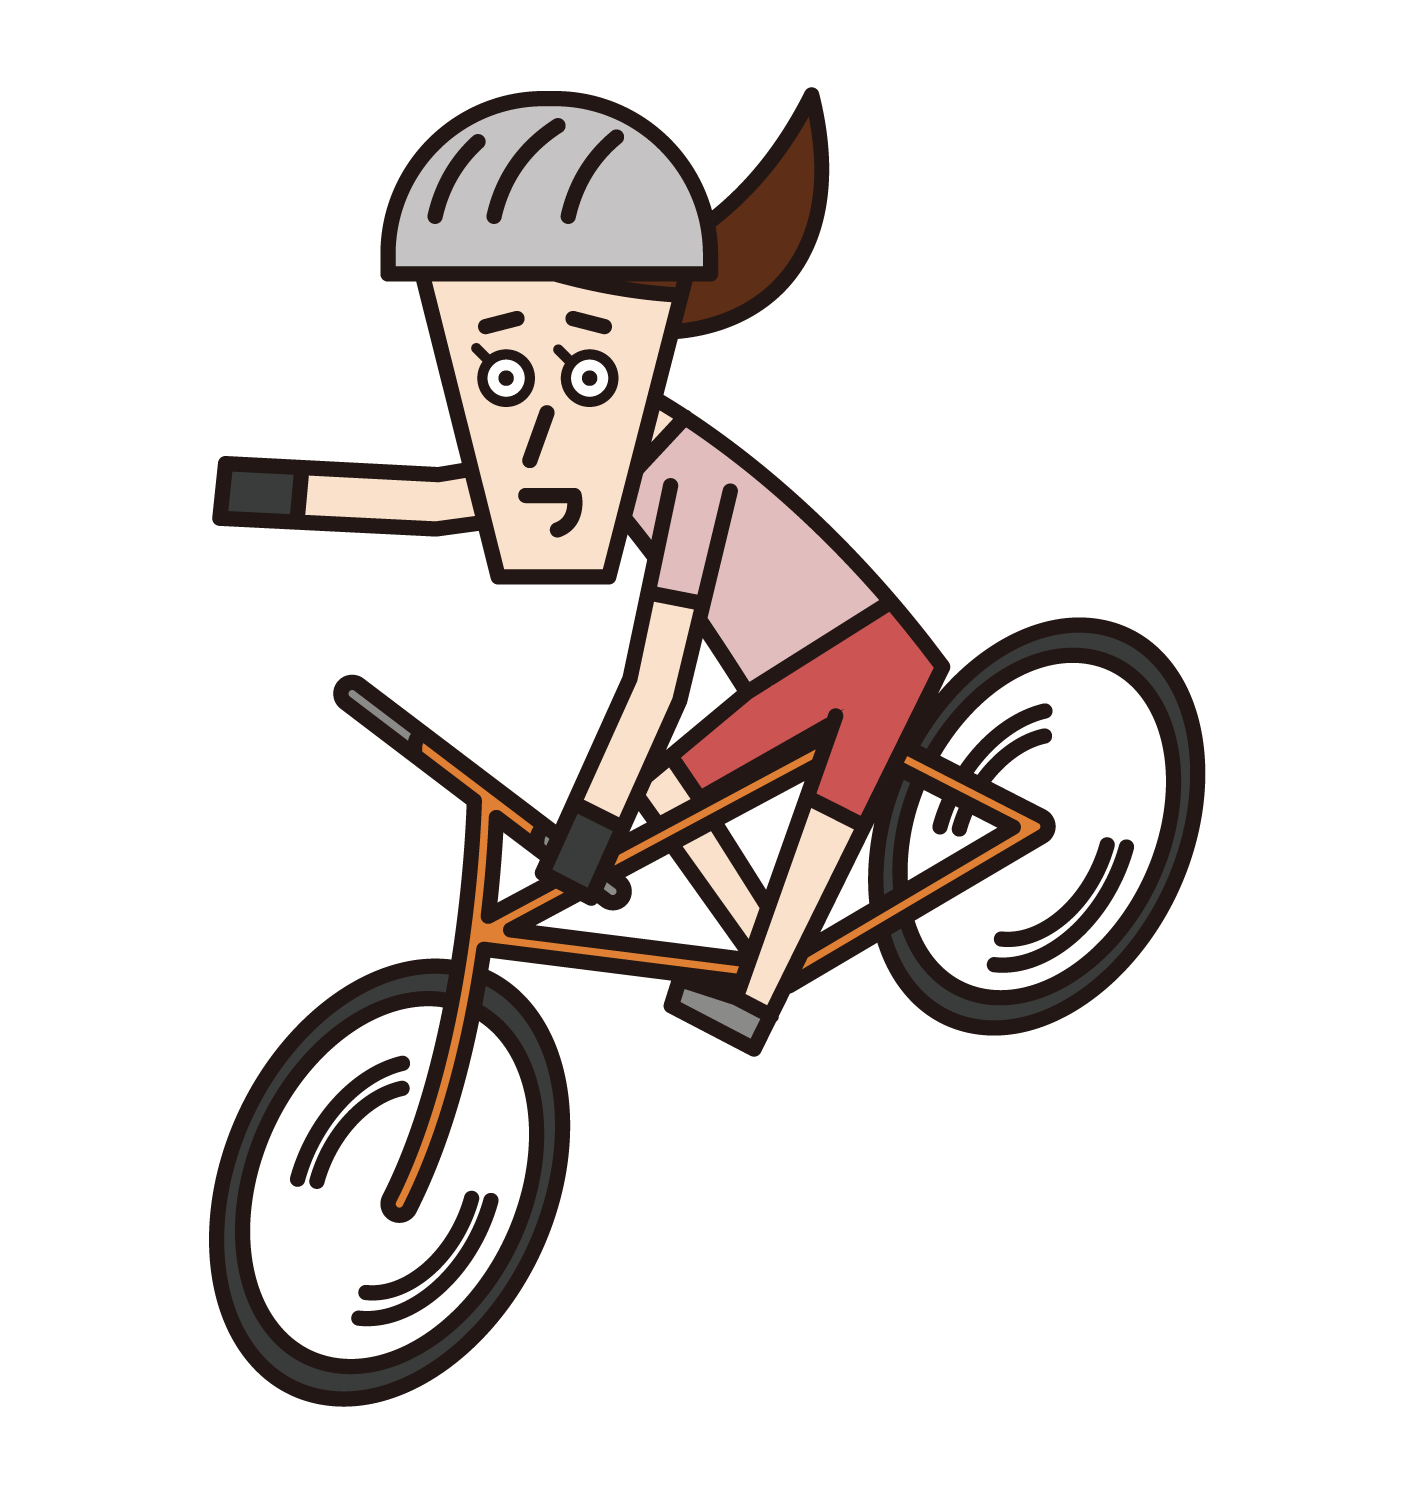 操作智慧手機時駕駛自行車的人（女性）的插圖